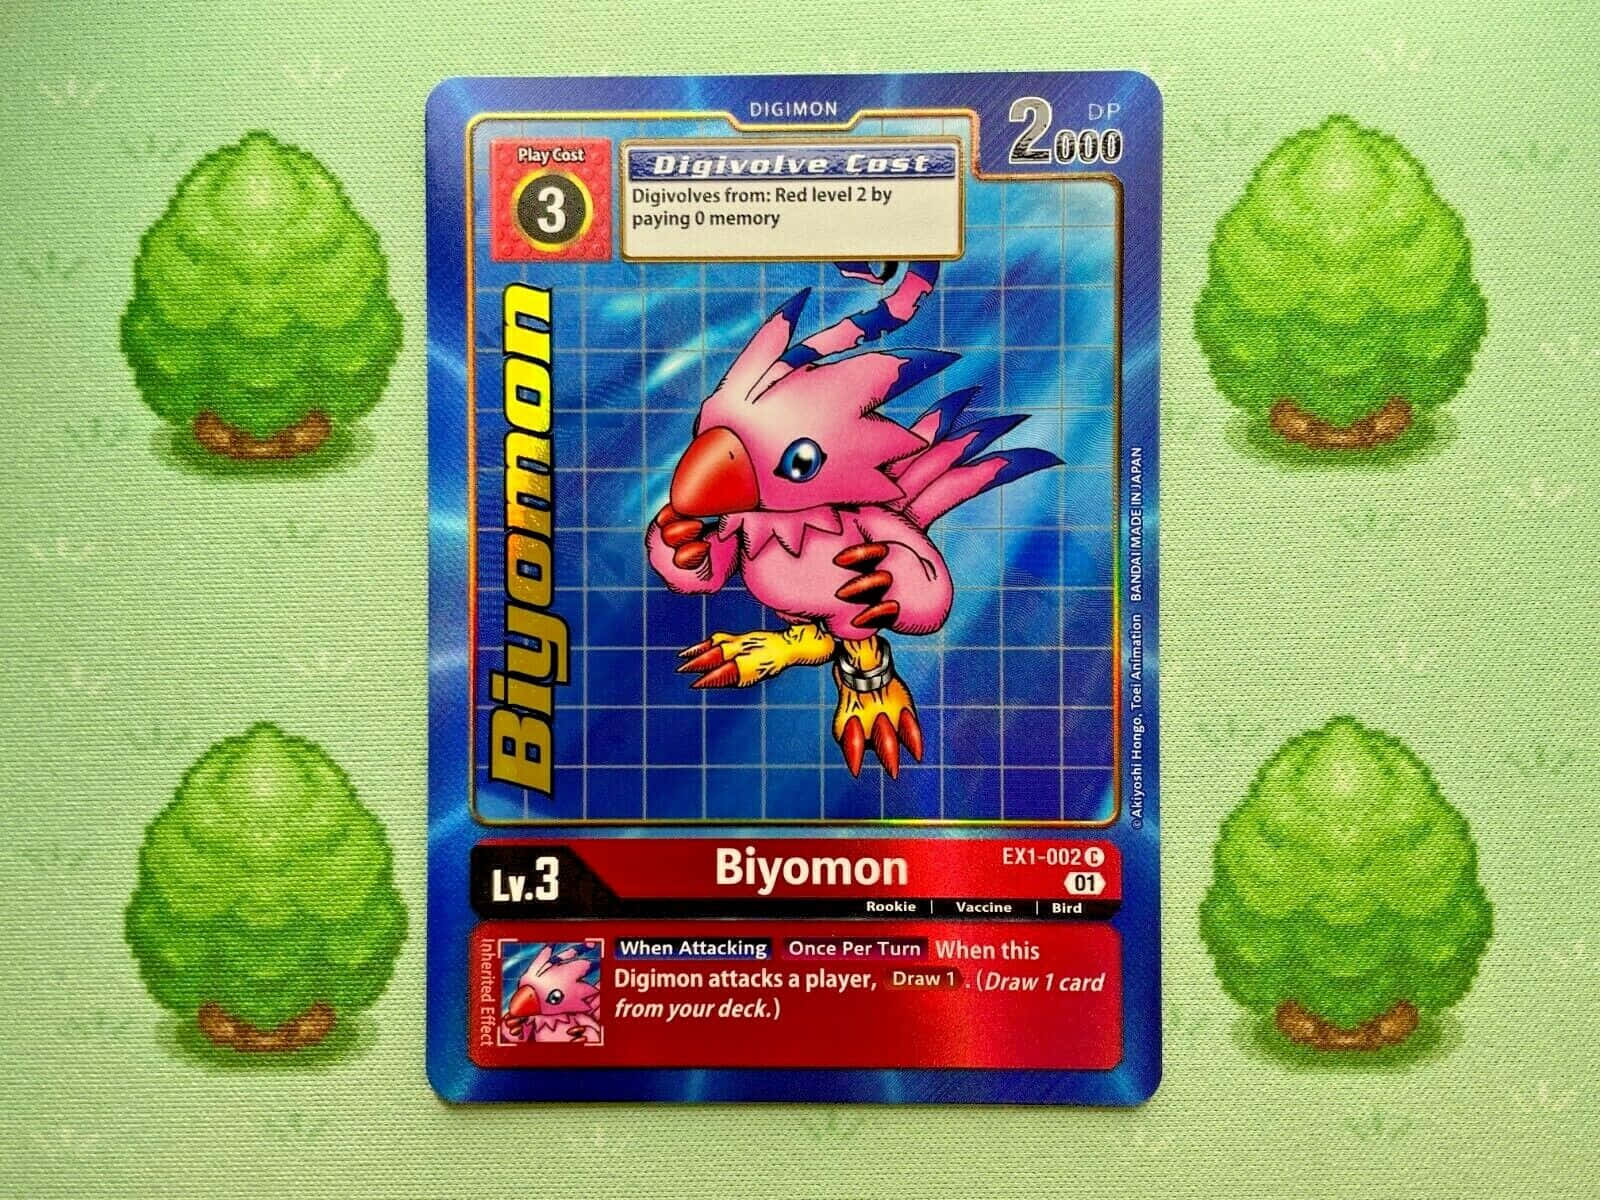 Biyomon - A Pink Bird Digimon Ready For Action Wallpaper